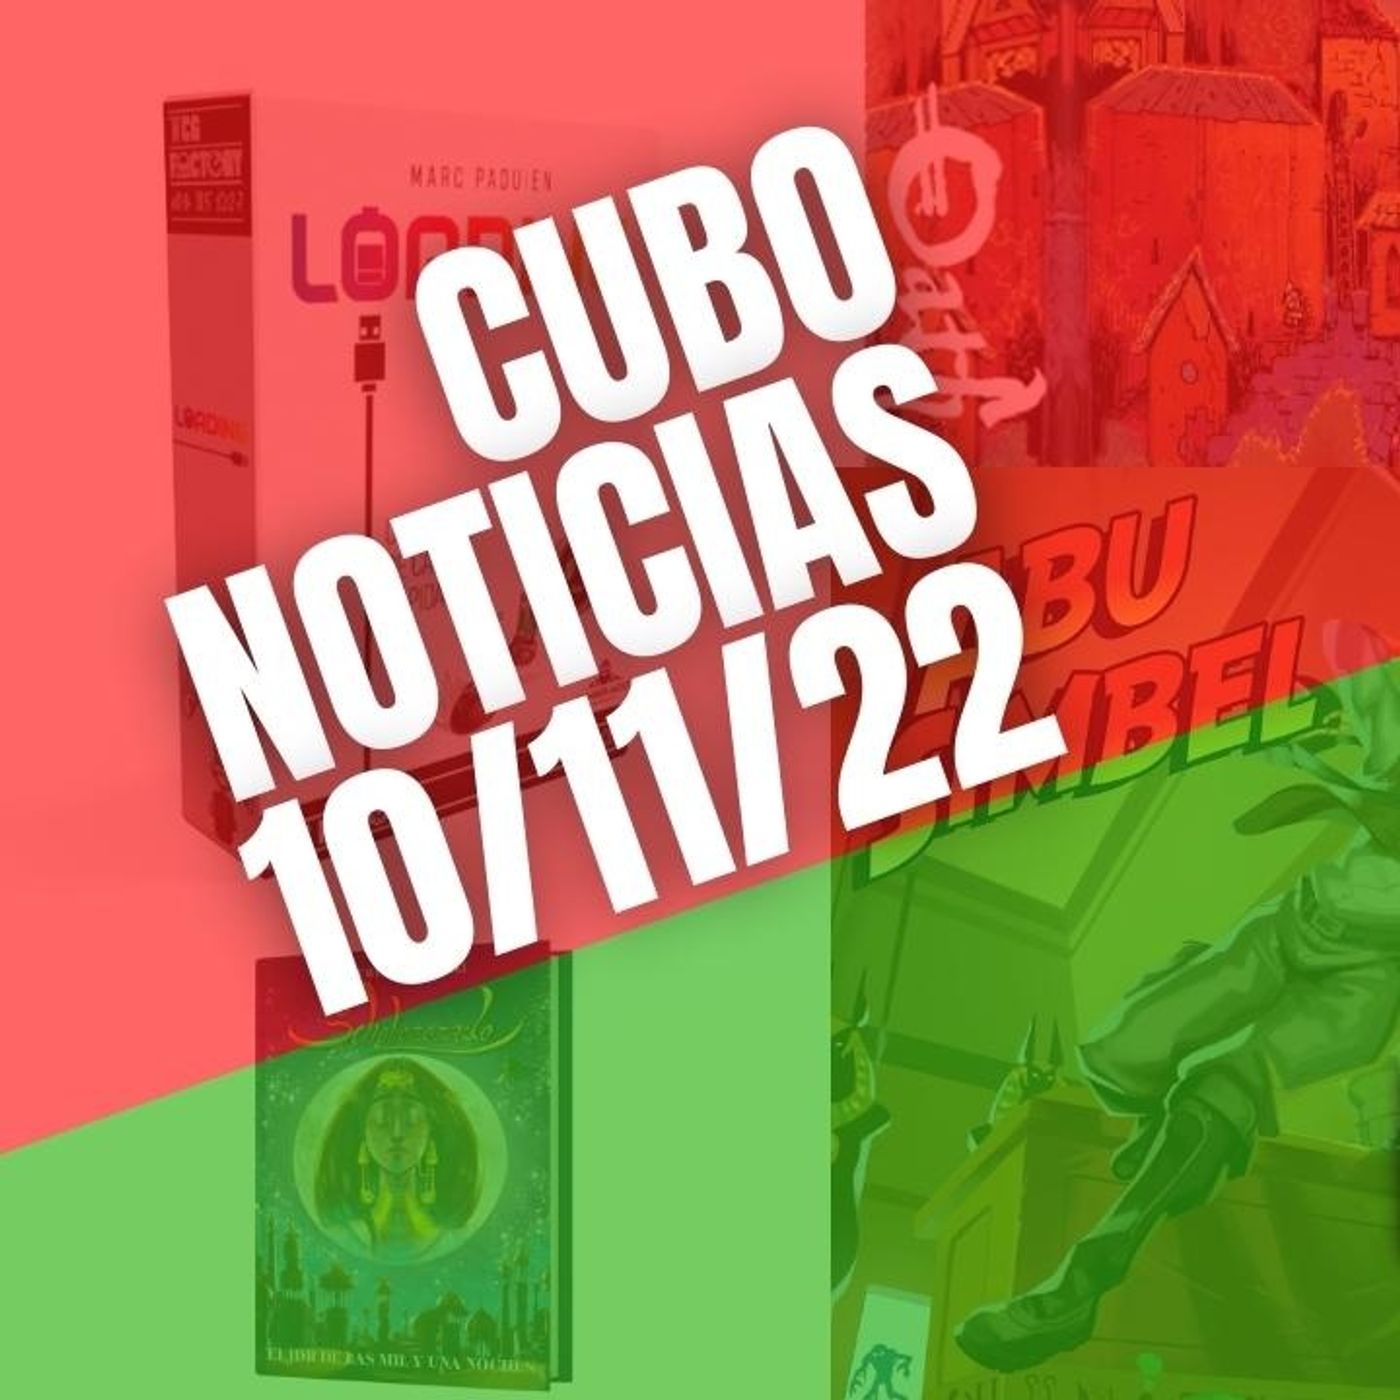 #CuboNoticias 10(/11/22